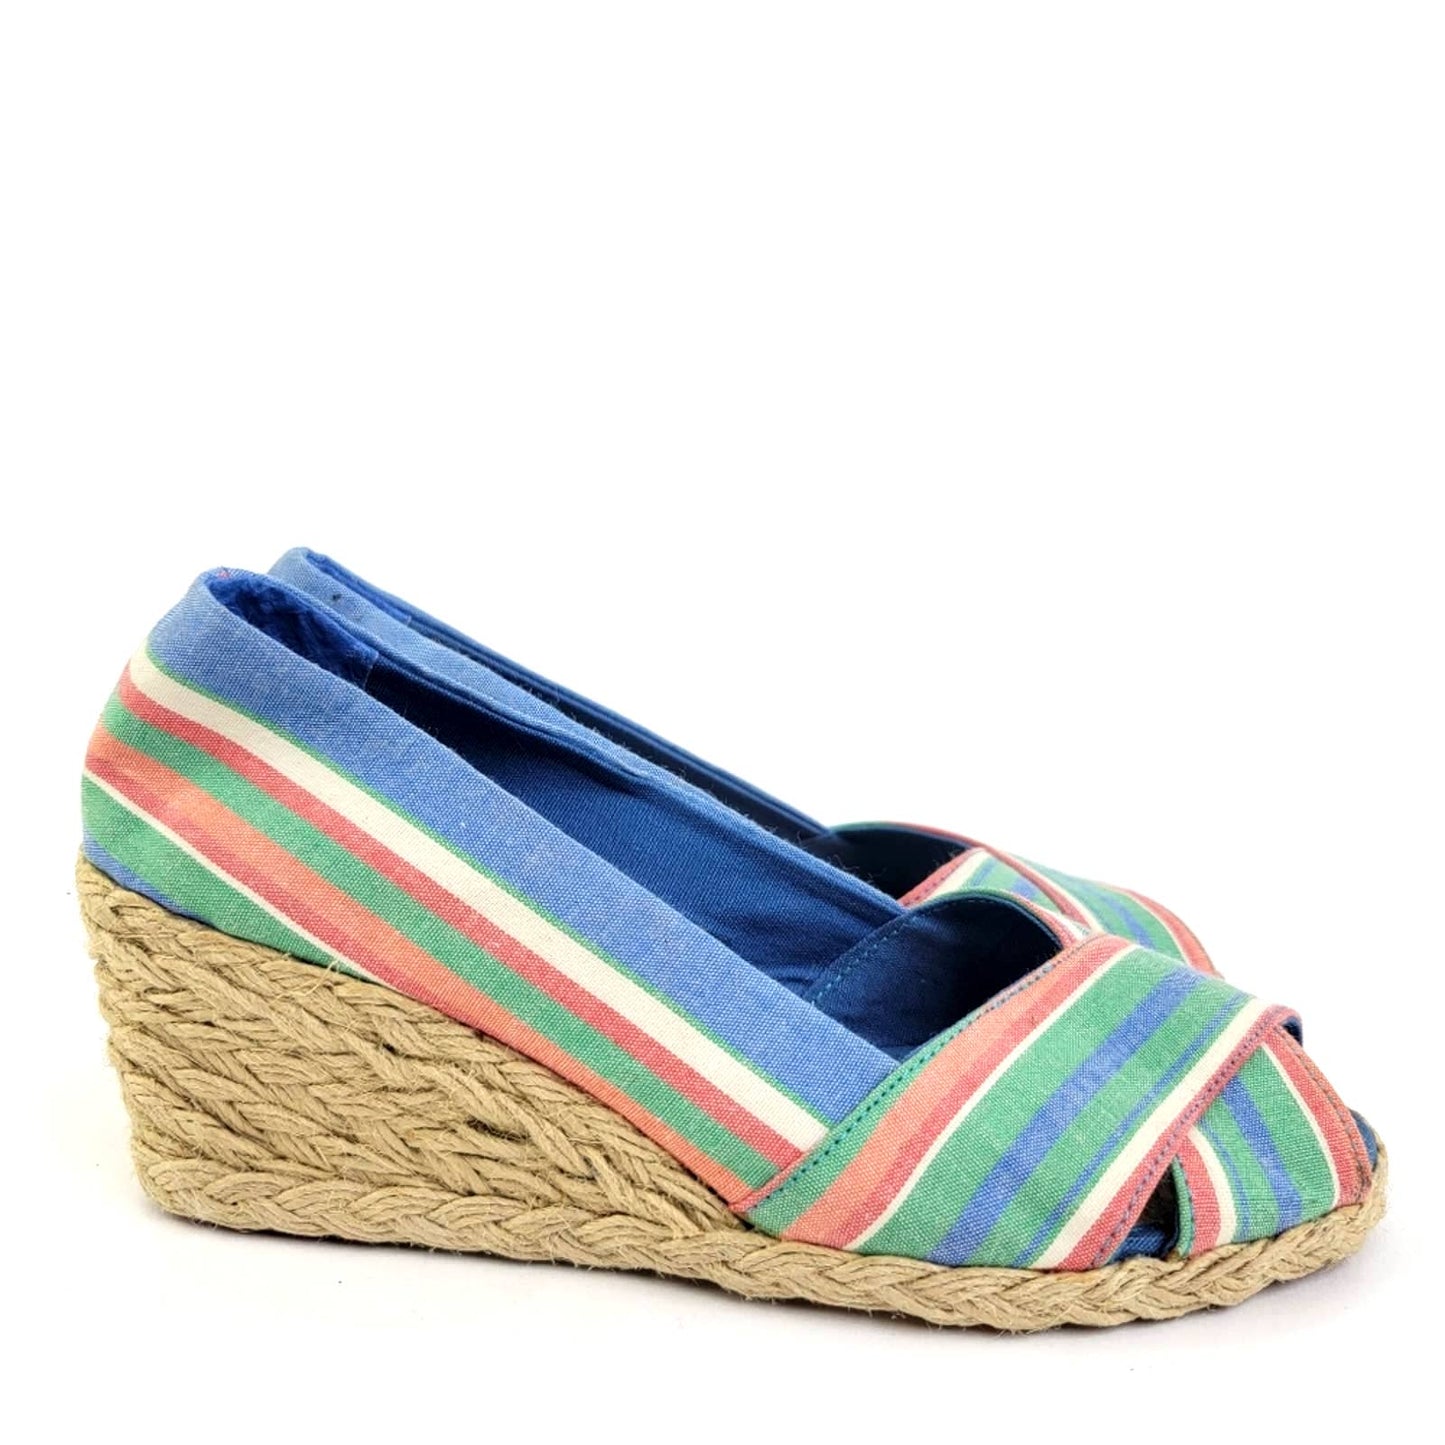 LAUREN Ralph Lauren Cecilia Rainbow Espadrille Wedge Sandal Pump Shoes - 6.5